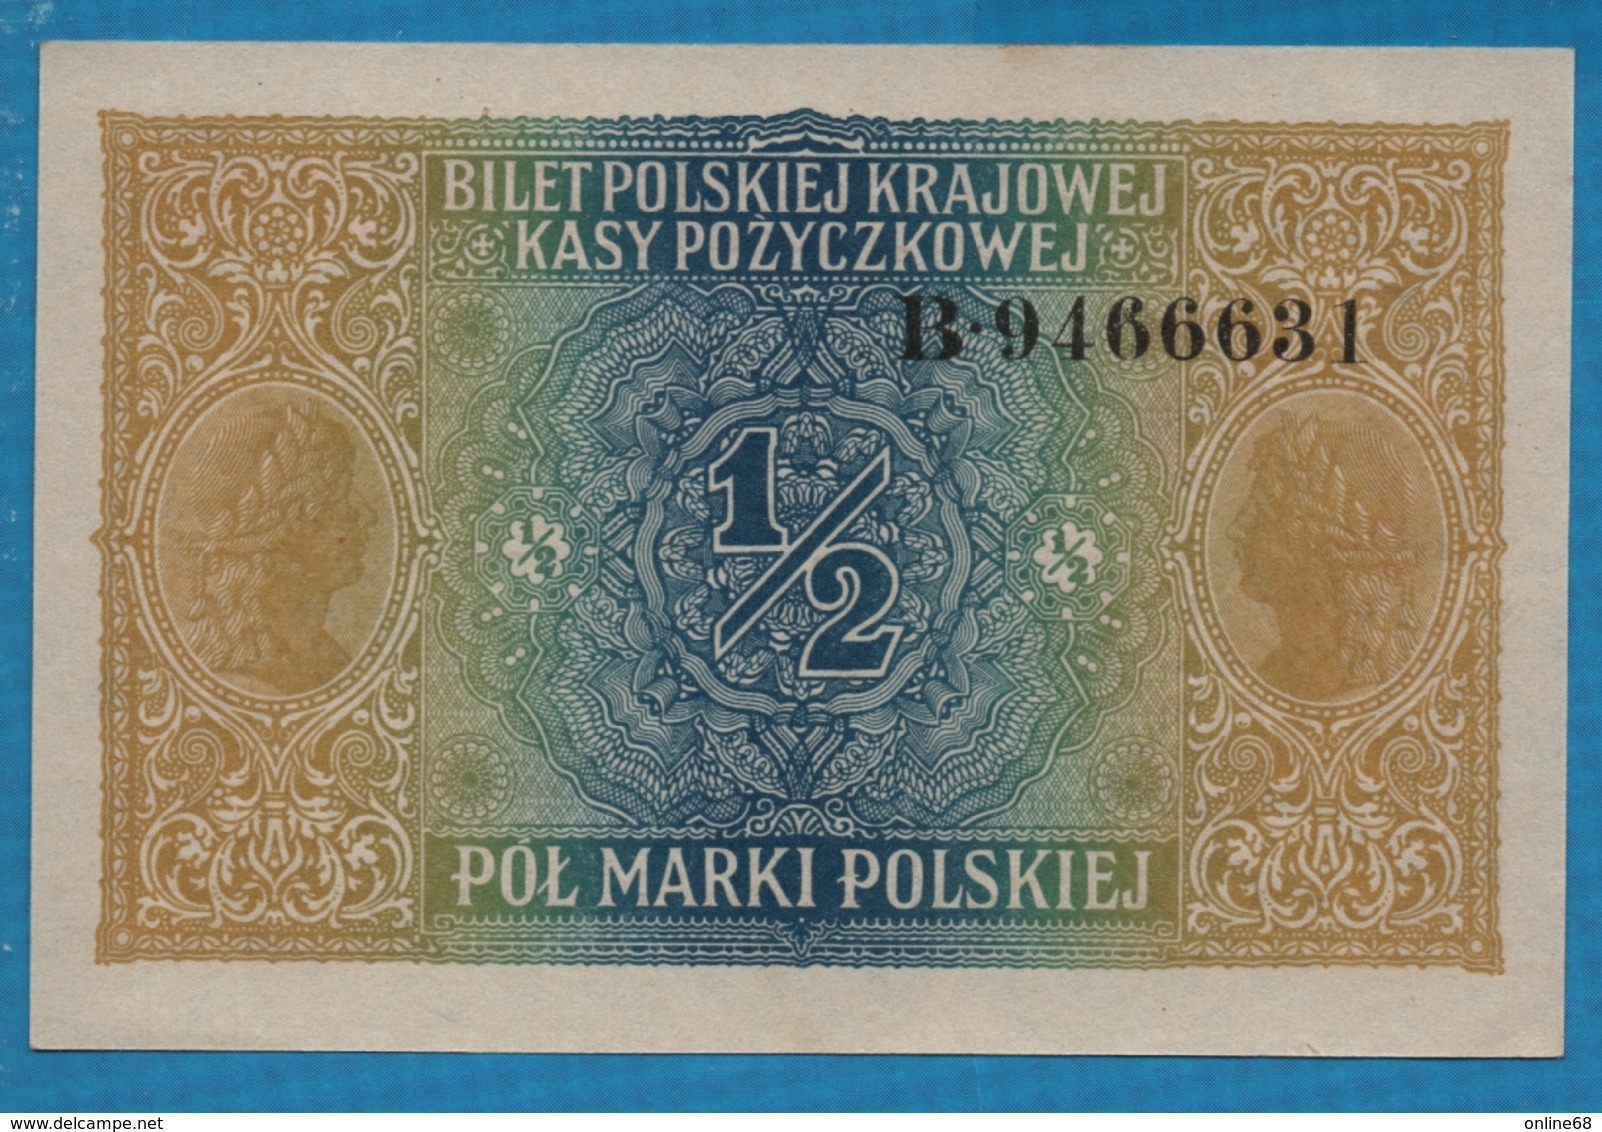 poland poland 1 2 marki polskiej 1917 serie b 9466631 p 7 polska krajowa kasa pozyczkowa